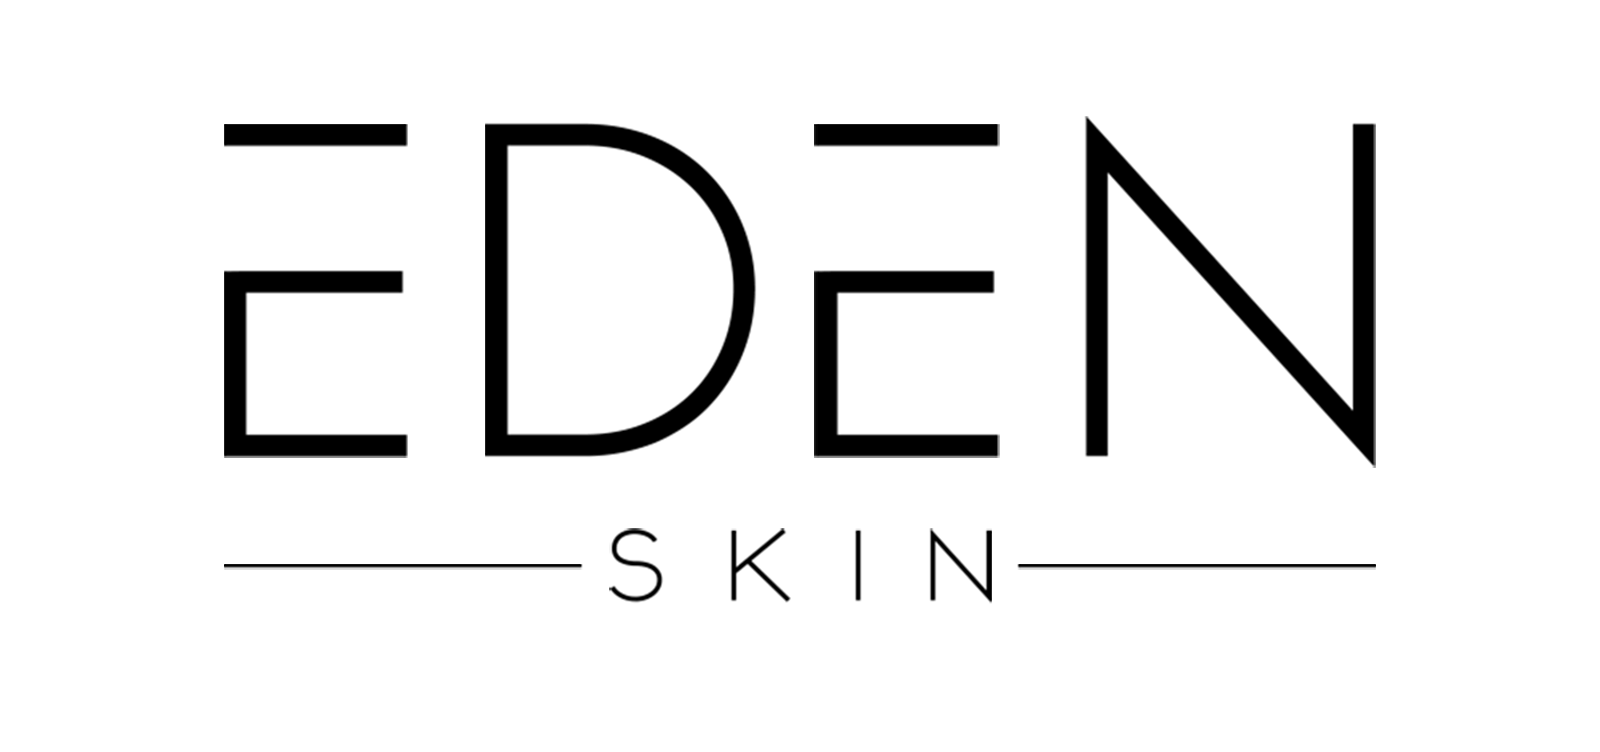 Eden Skin